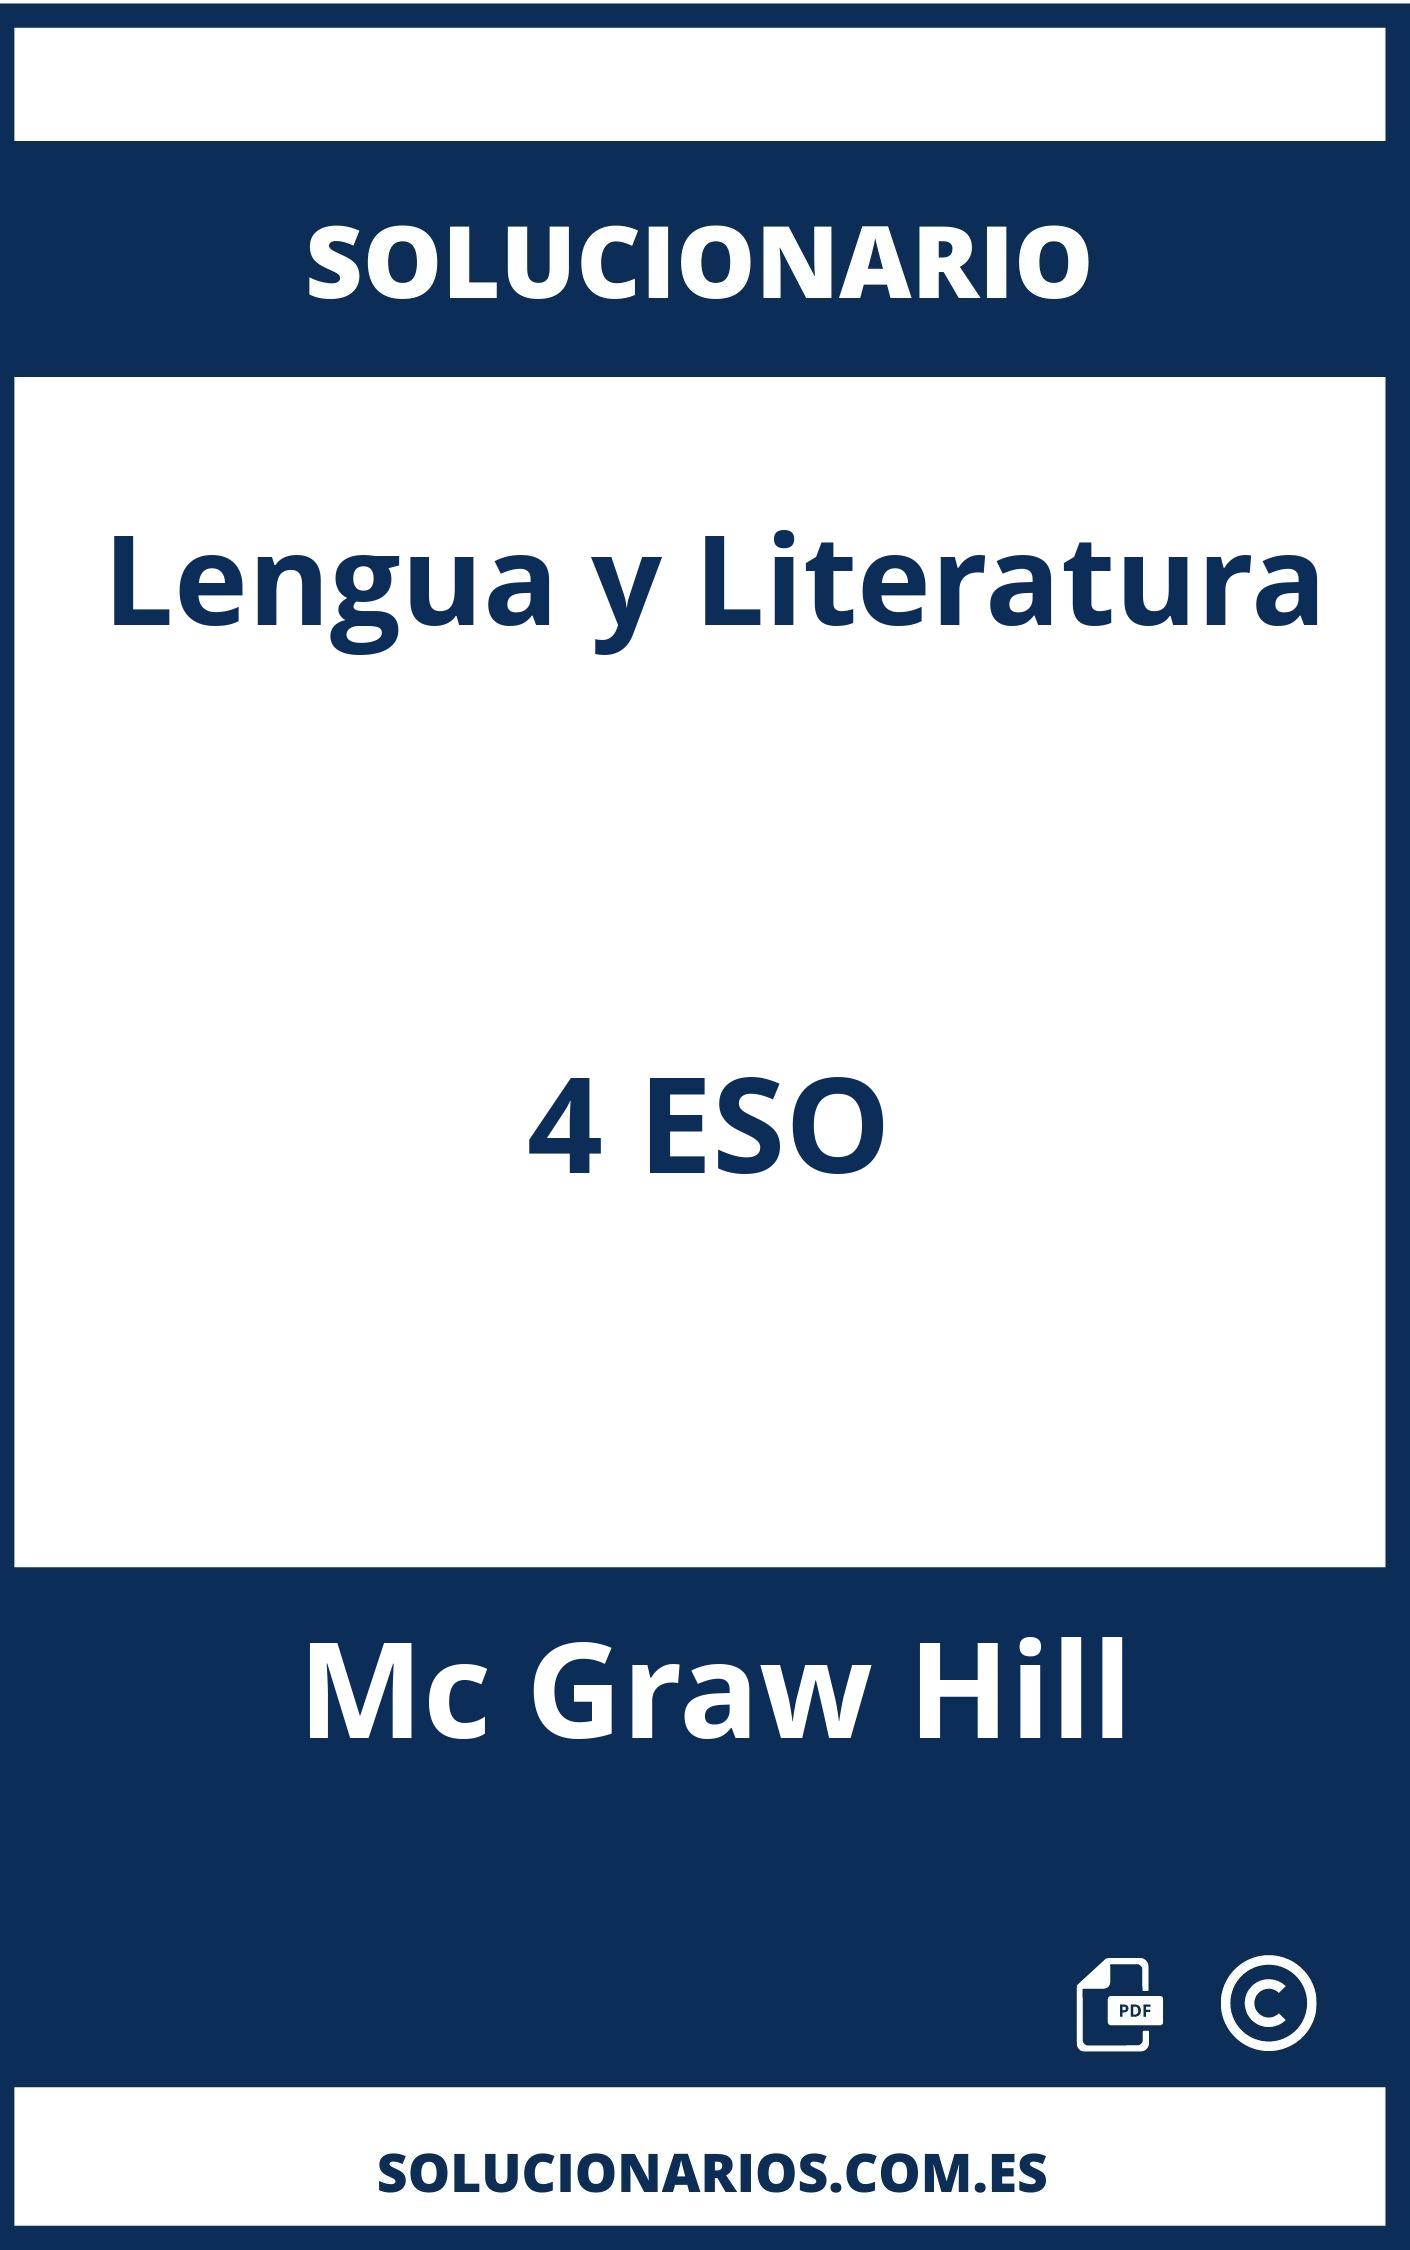 Solucionario Lengua y Literatura 4 ESO Mc Graw Hill